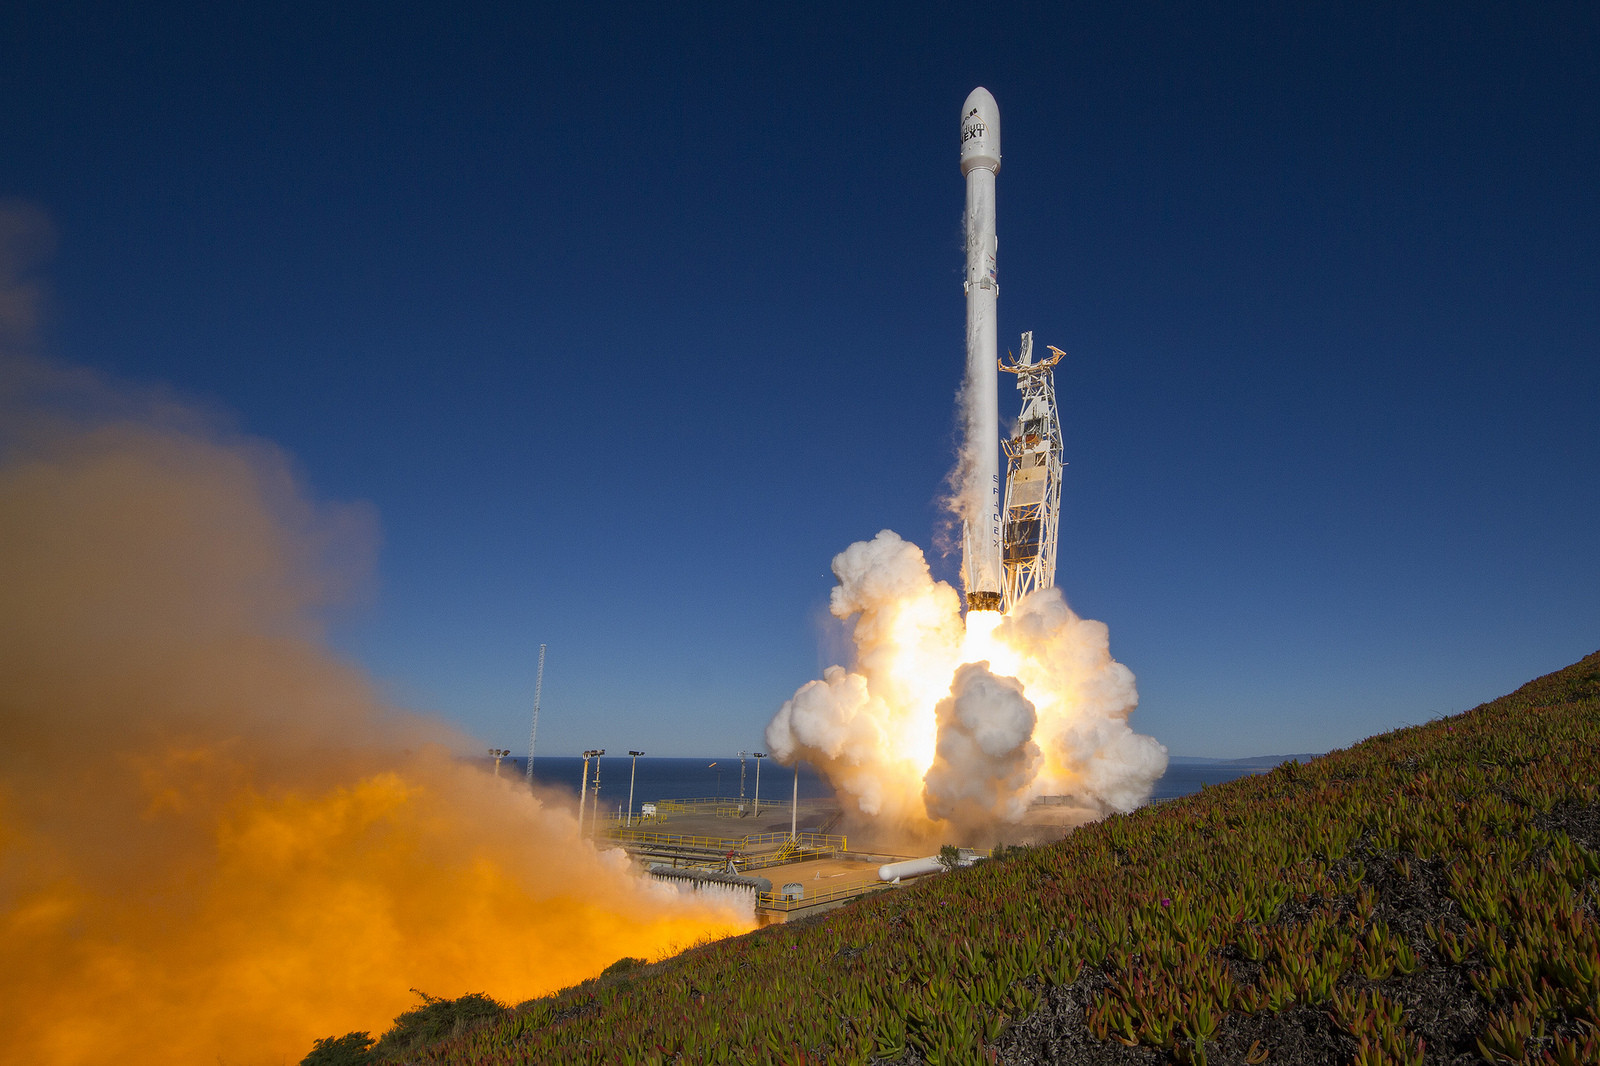 Otra foto del cohete Falcon 9 iniciando el despegue desde la base